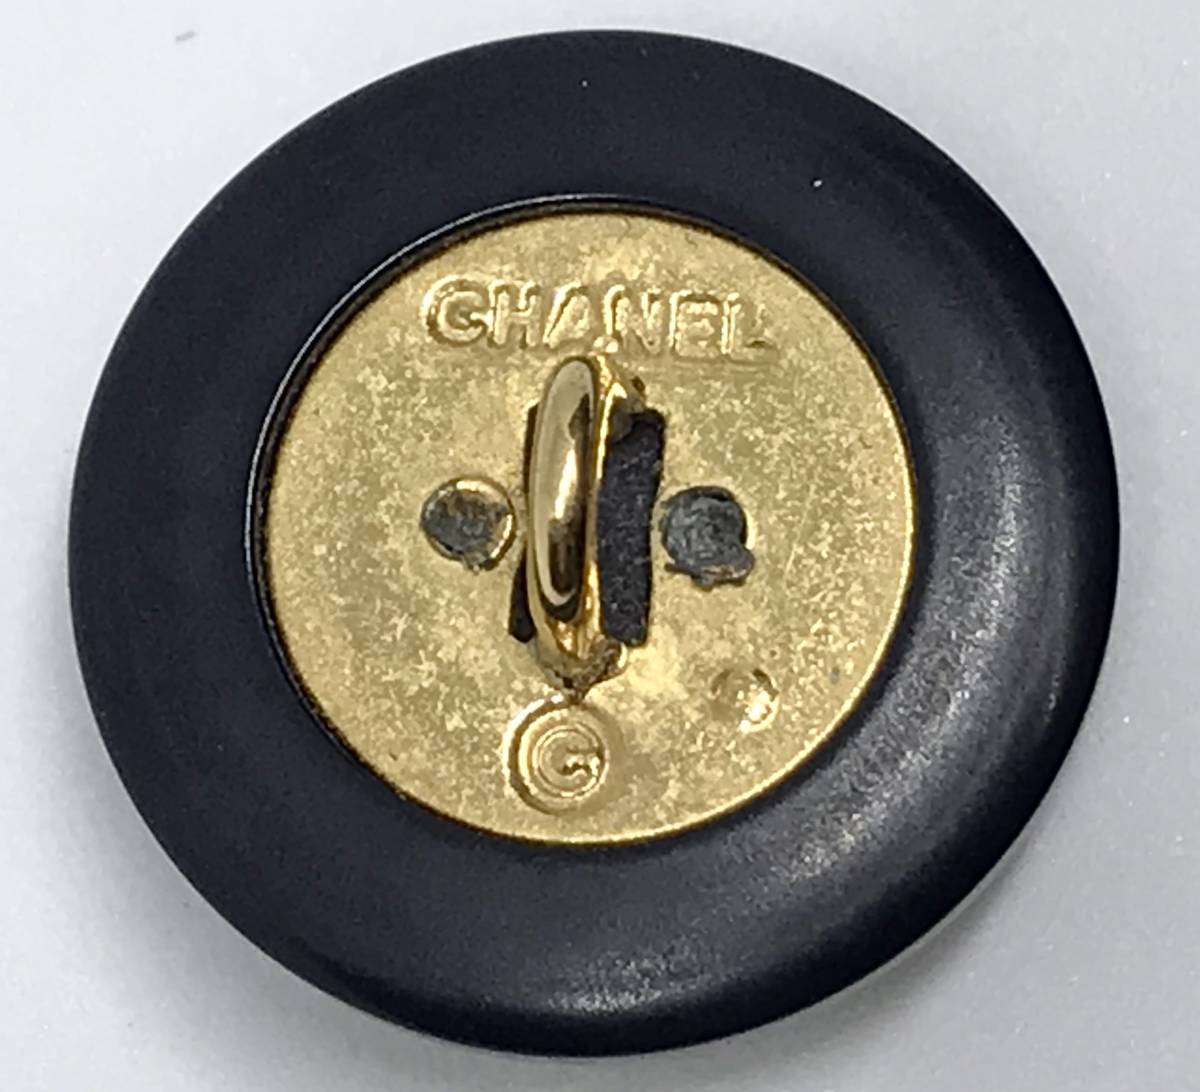 CHANEL シャネル 金ロゴ ココマーク ボタン 黒 スペア パーツ 裏側 